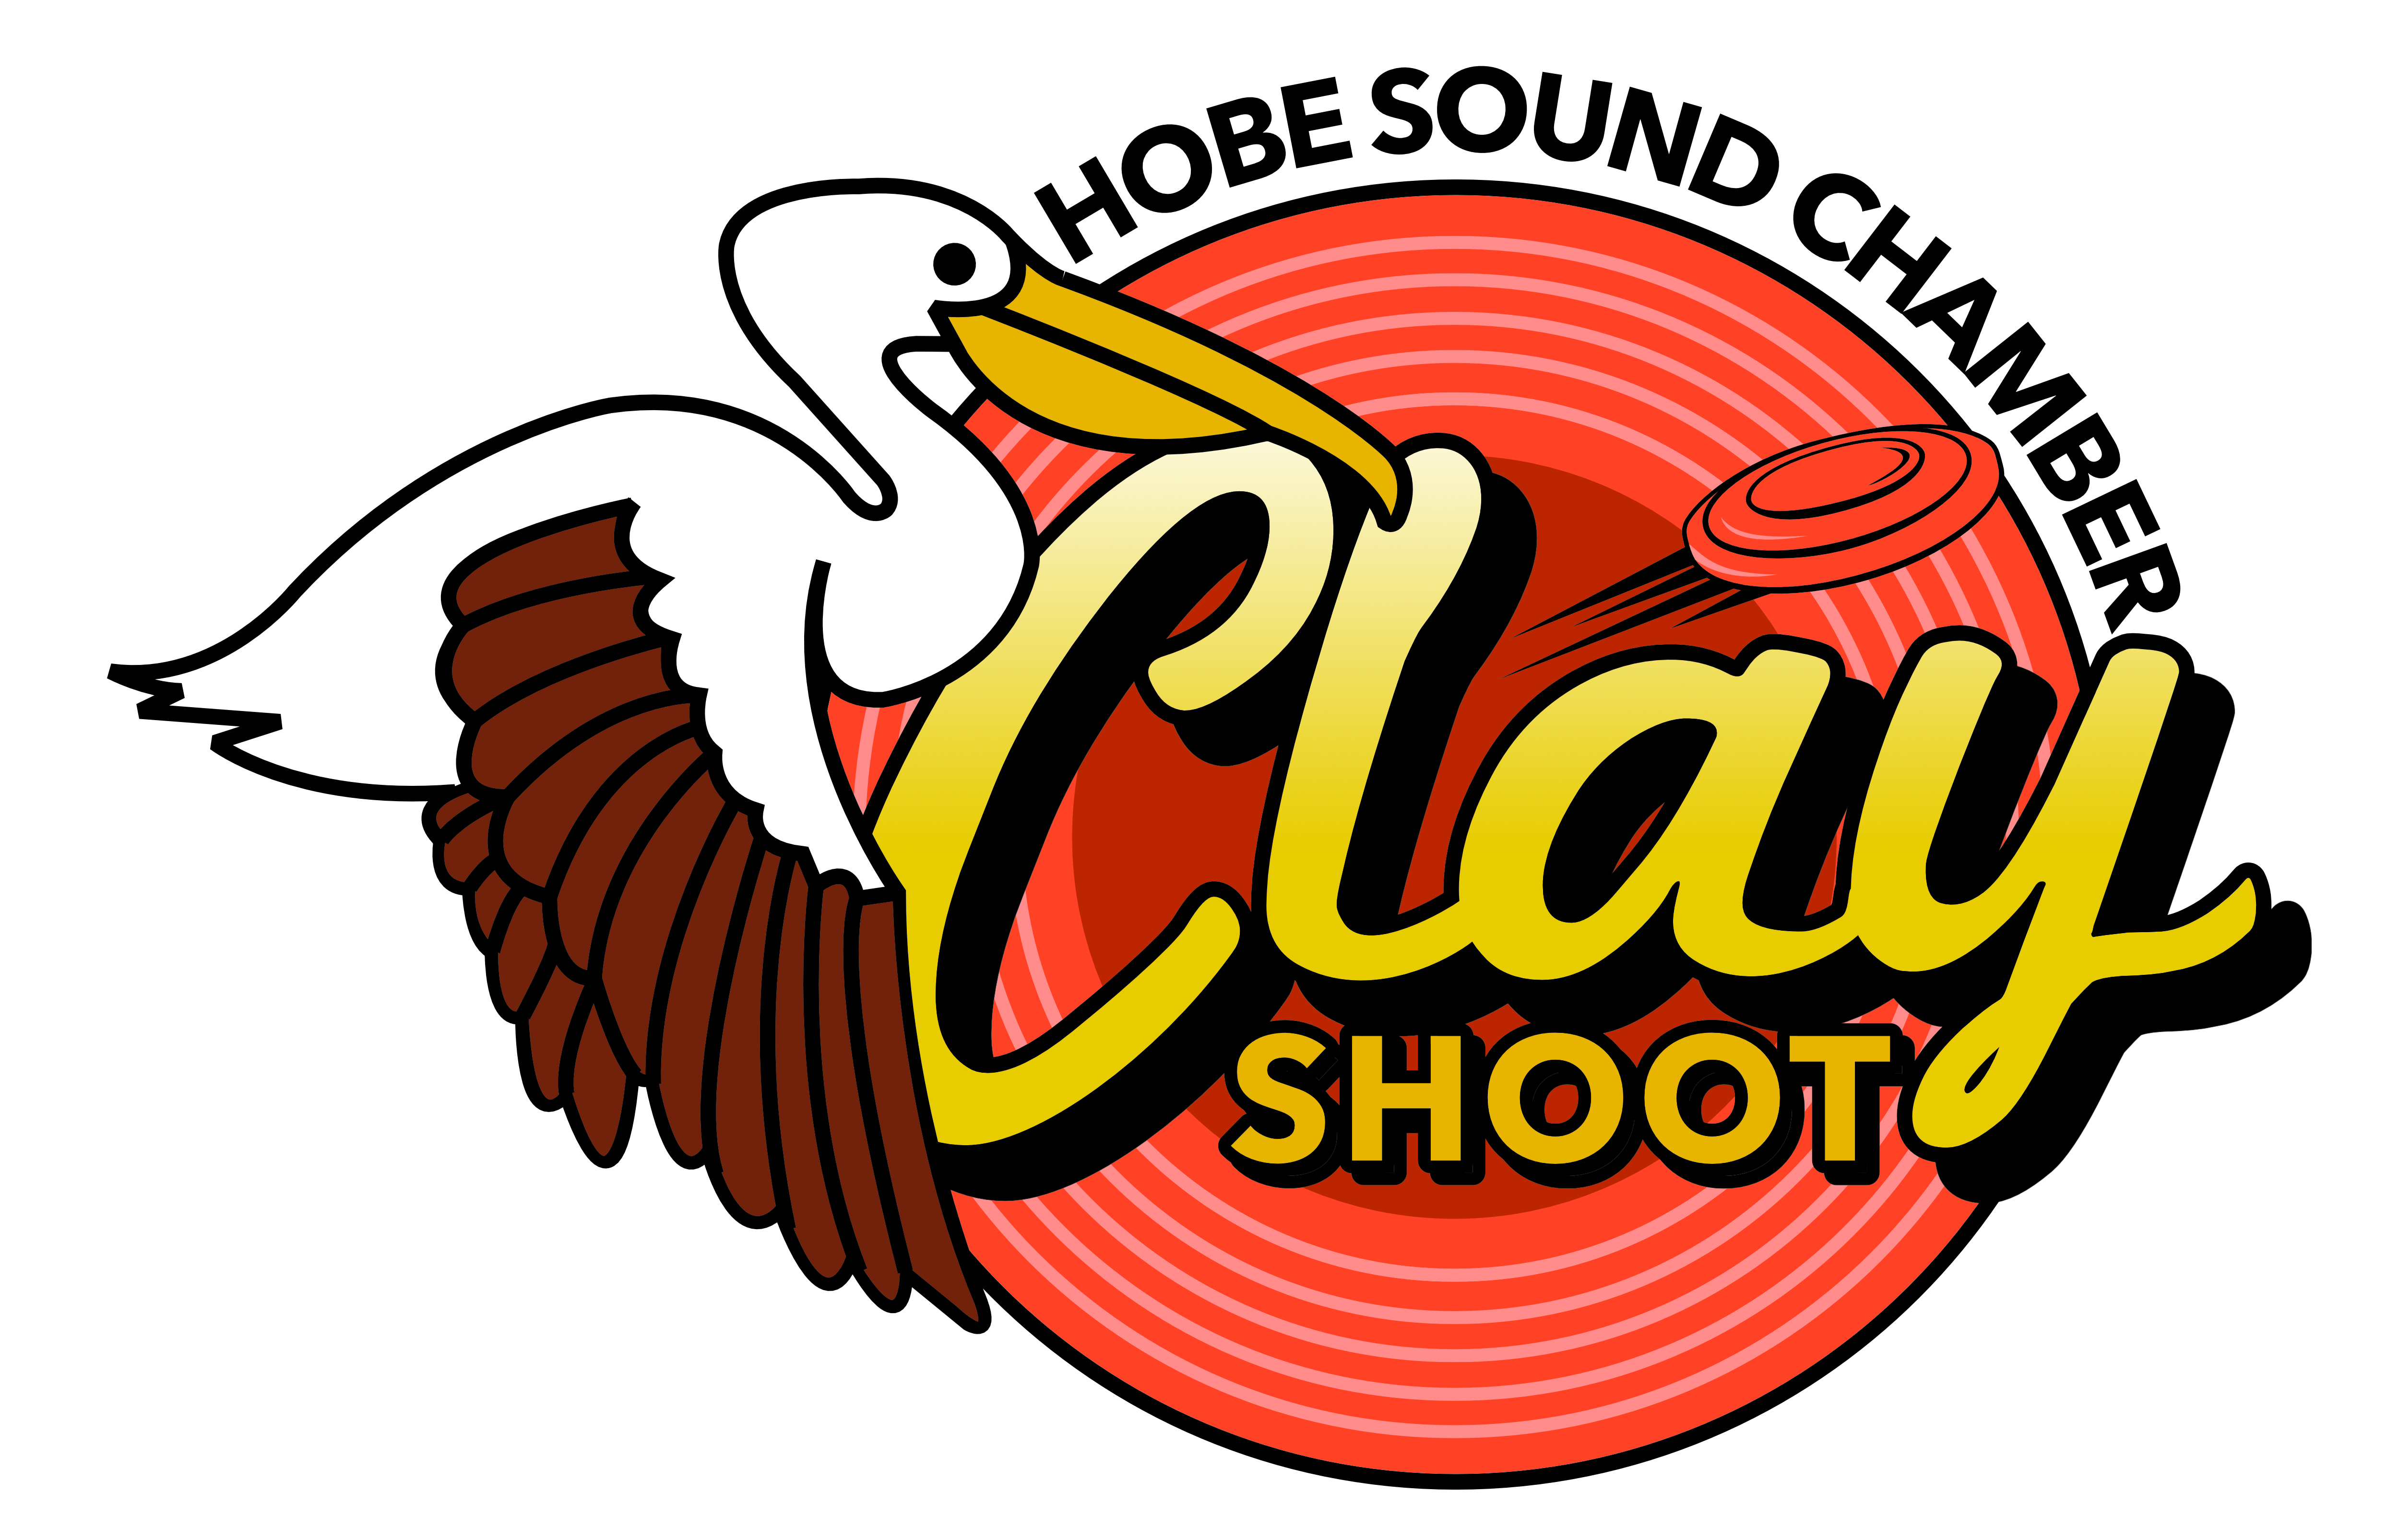 2561 HSCC Clay Shoot Logo